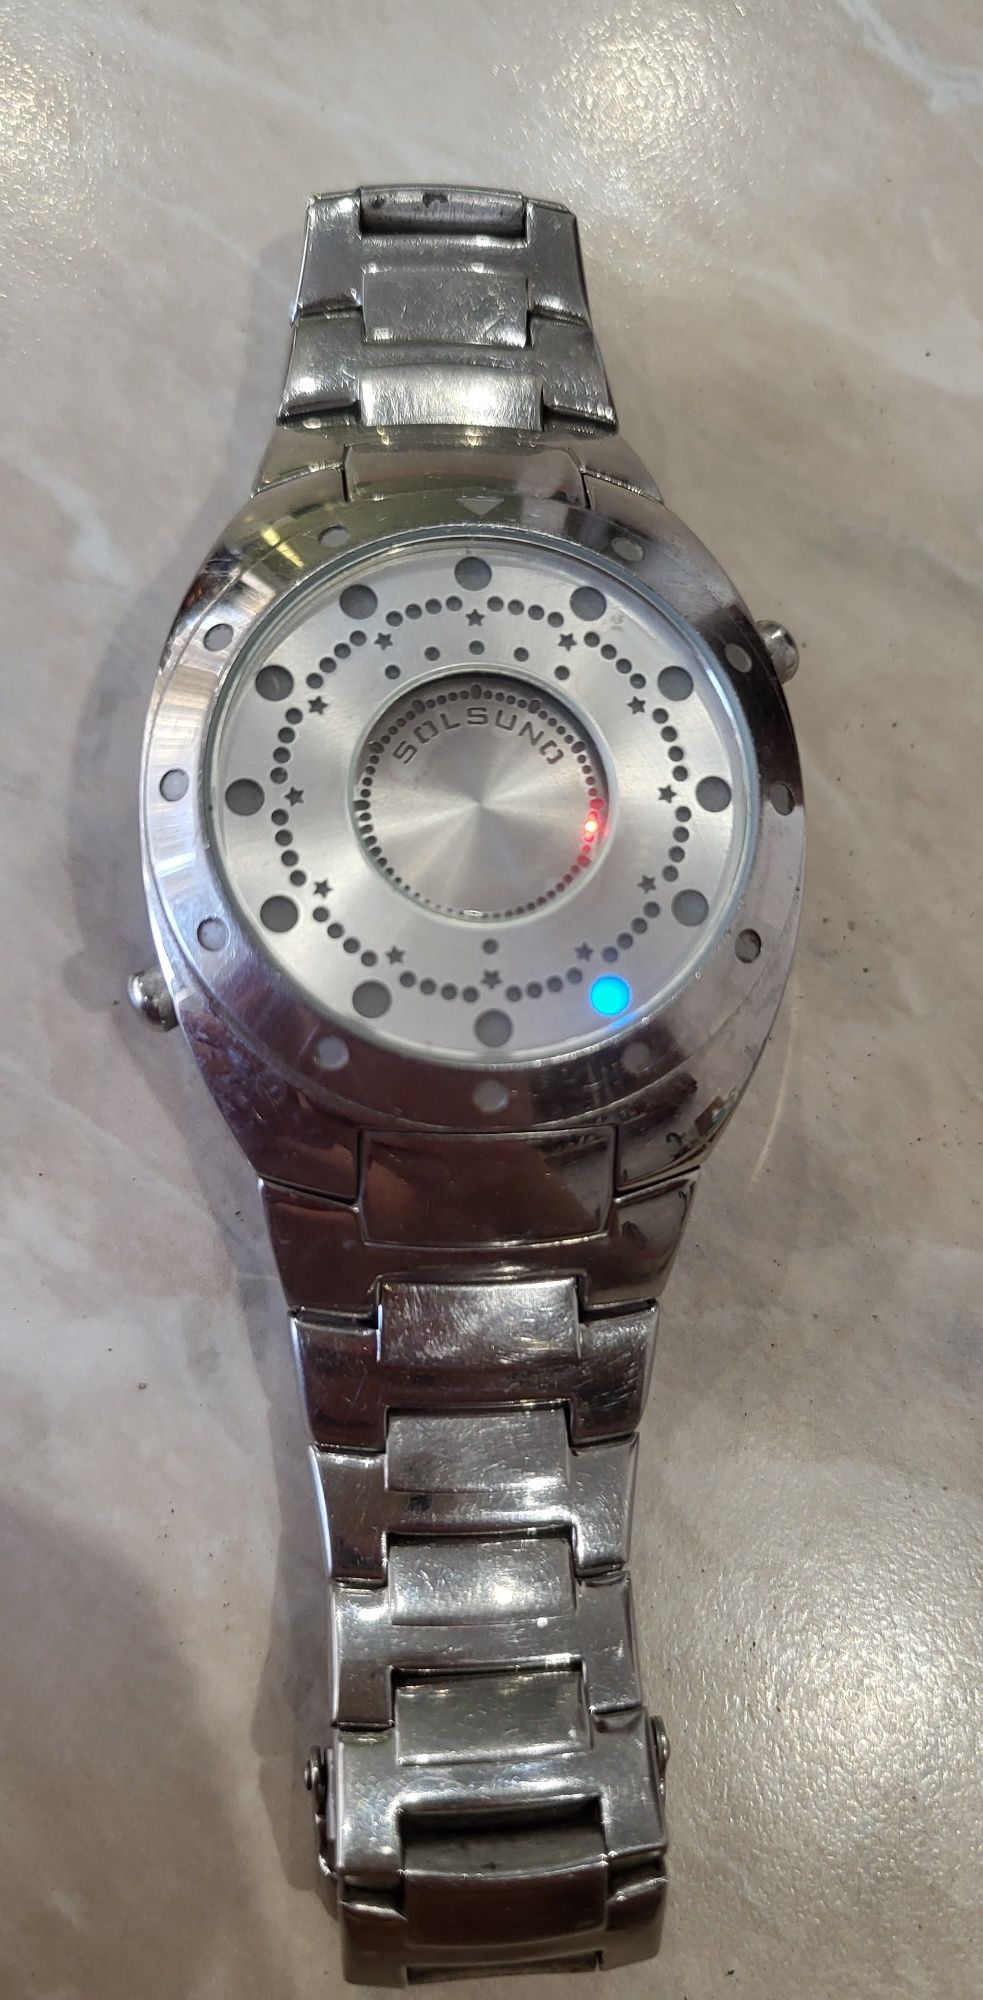 Продам недорого красивые часы solsuno оригинал винтаж